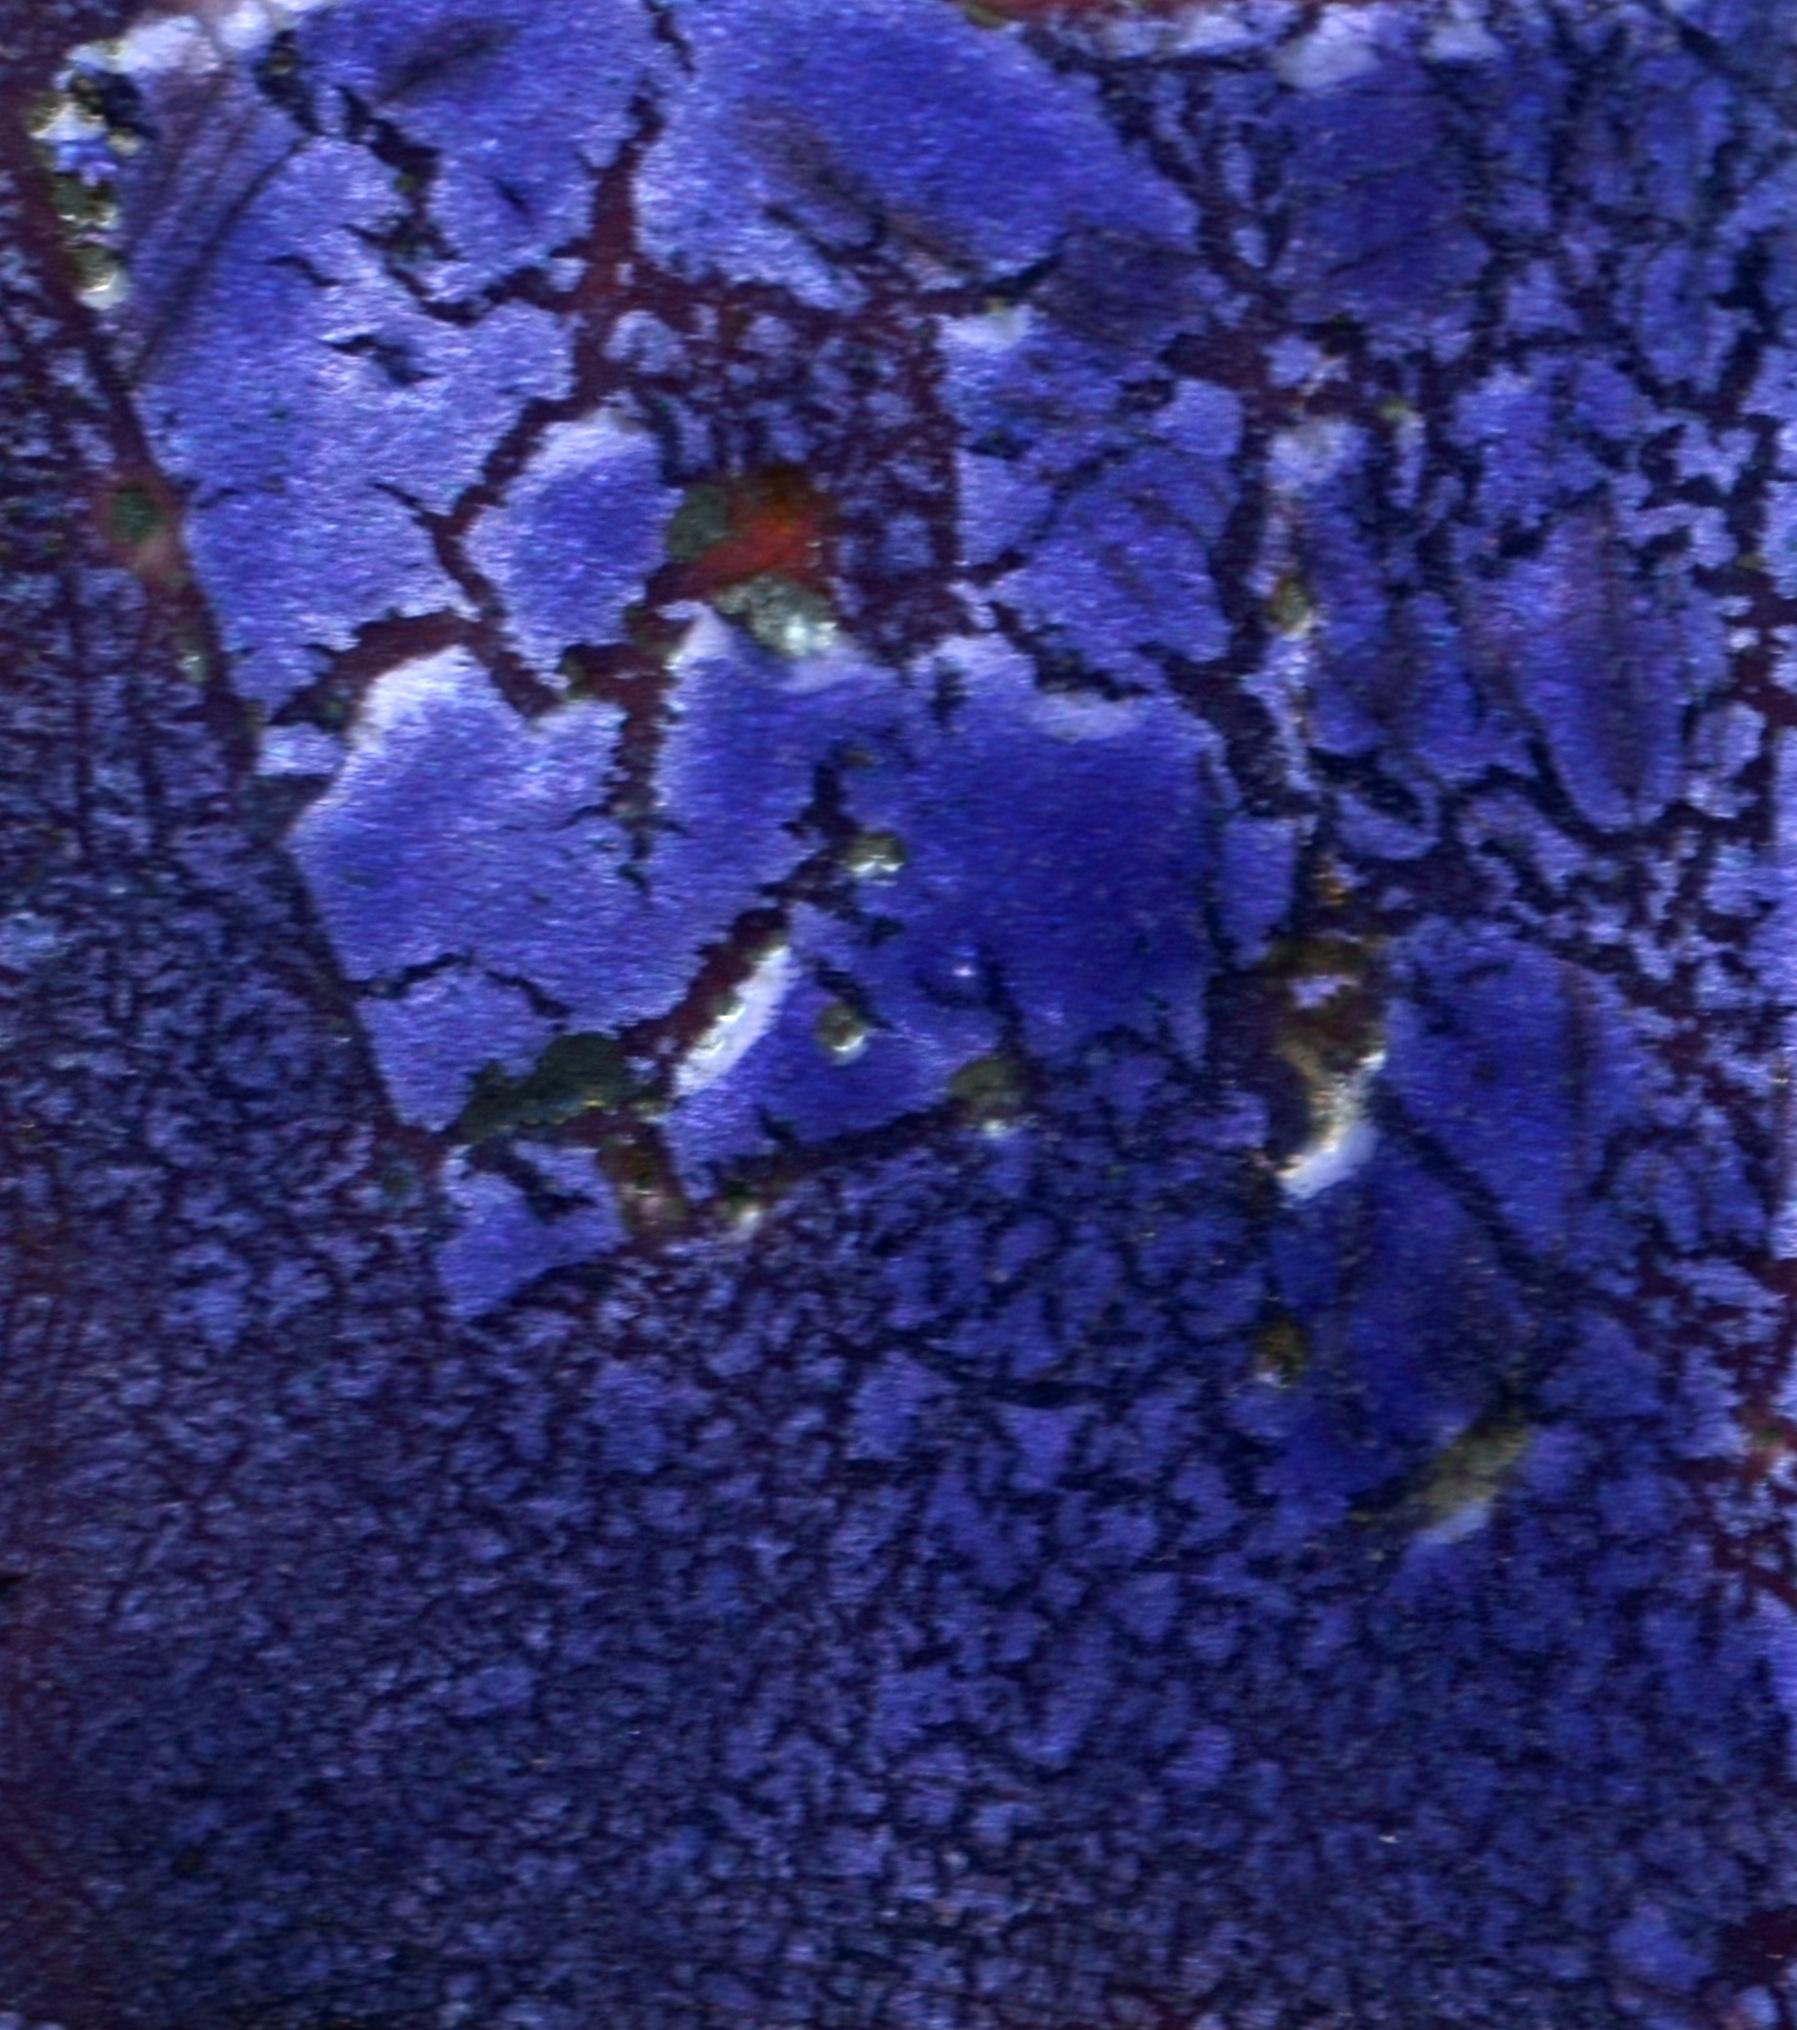 Hermann Schütte (1893 Osnabrück - 1973 Hamburg), Weiße Maske auf violettem Grund. Emaillierte Kupferplatte auf Holzunterlage, 37 x 29,5 cm, in der rechten unteren Ecke des Brandes monogrammiert und datiert 